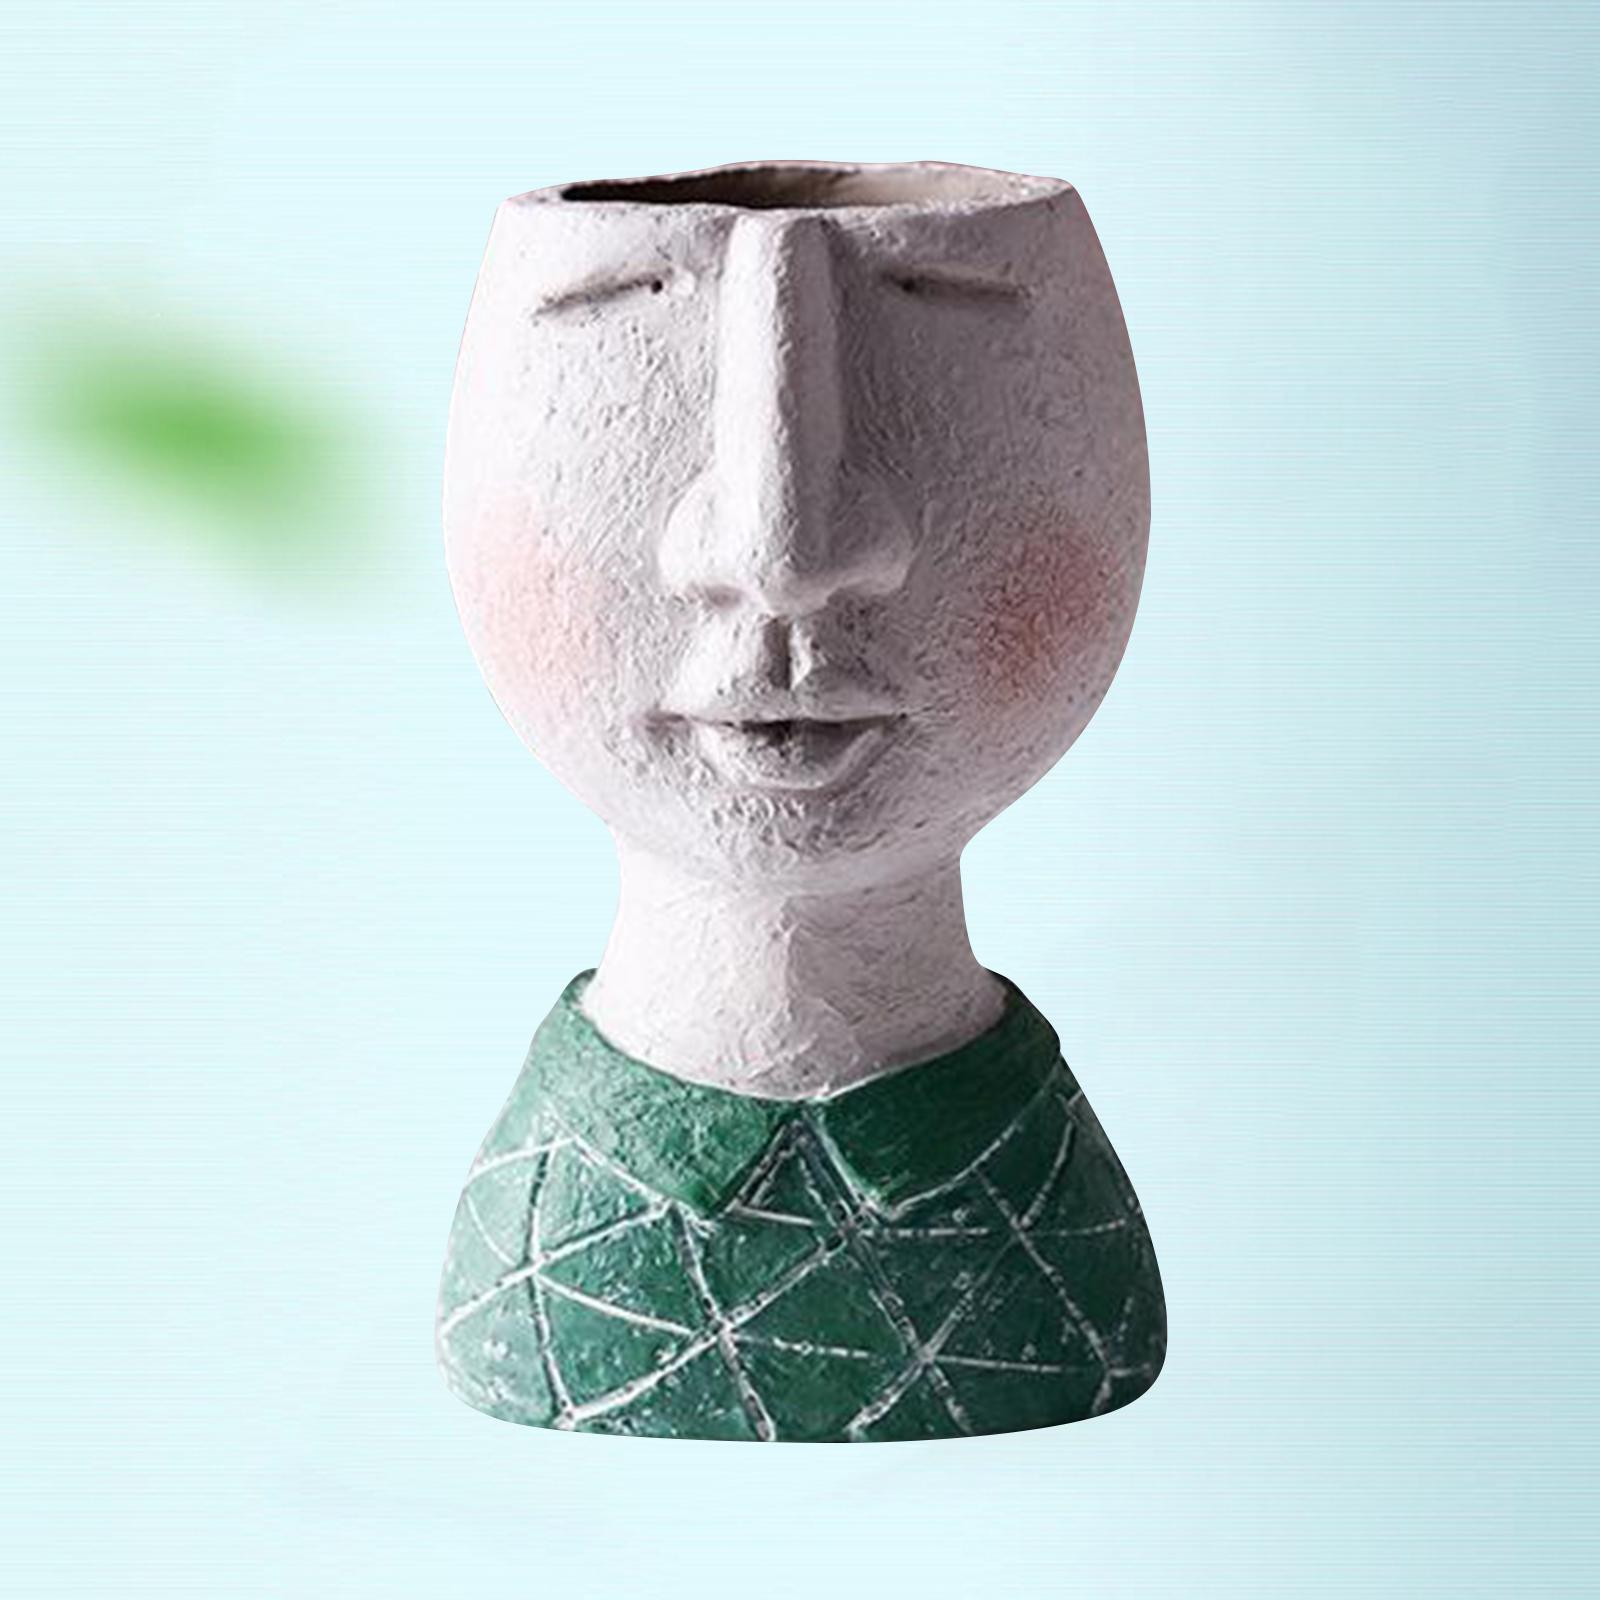 Artistic Portrait Flower Pot Vase Decorative Home Ornament Boy